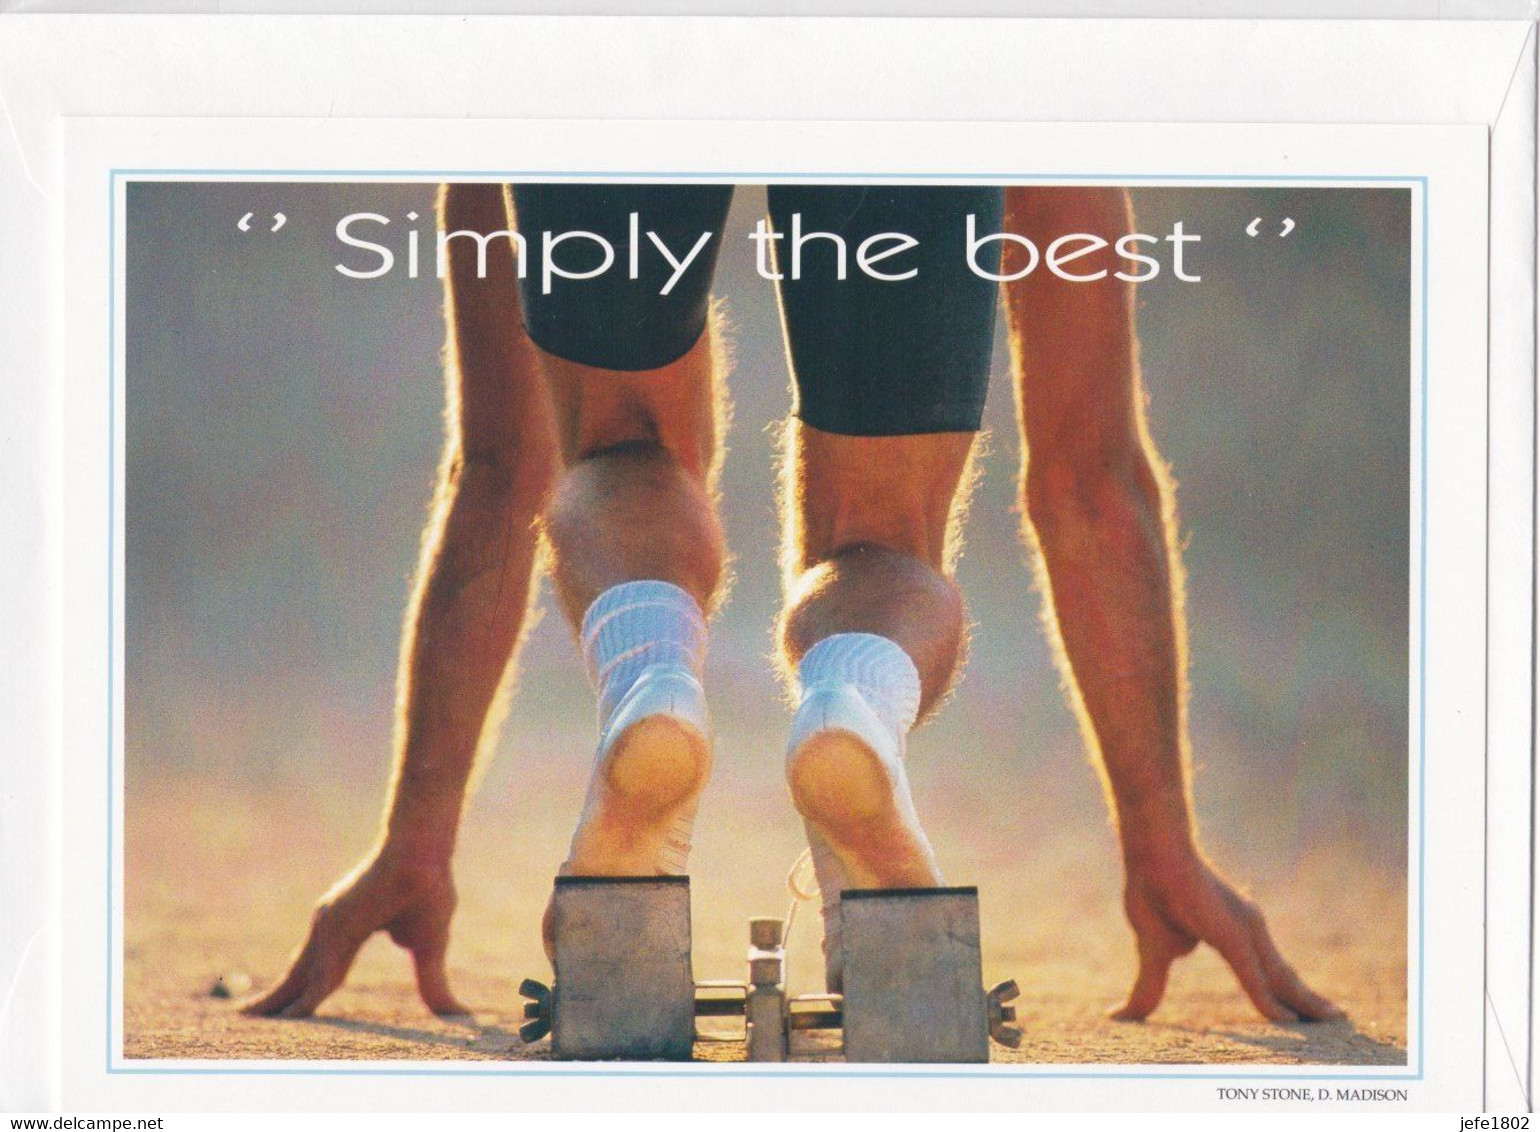 Postogram 107 / 96 - Simply The Best - D. Madison,  Tony Stone - Runner - Loper / Sprinter / Bare Feet - Postogram